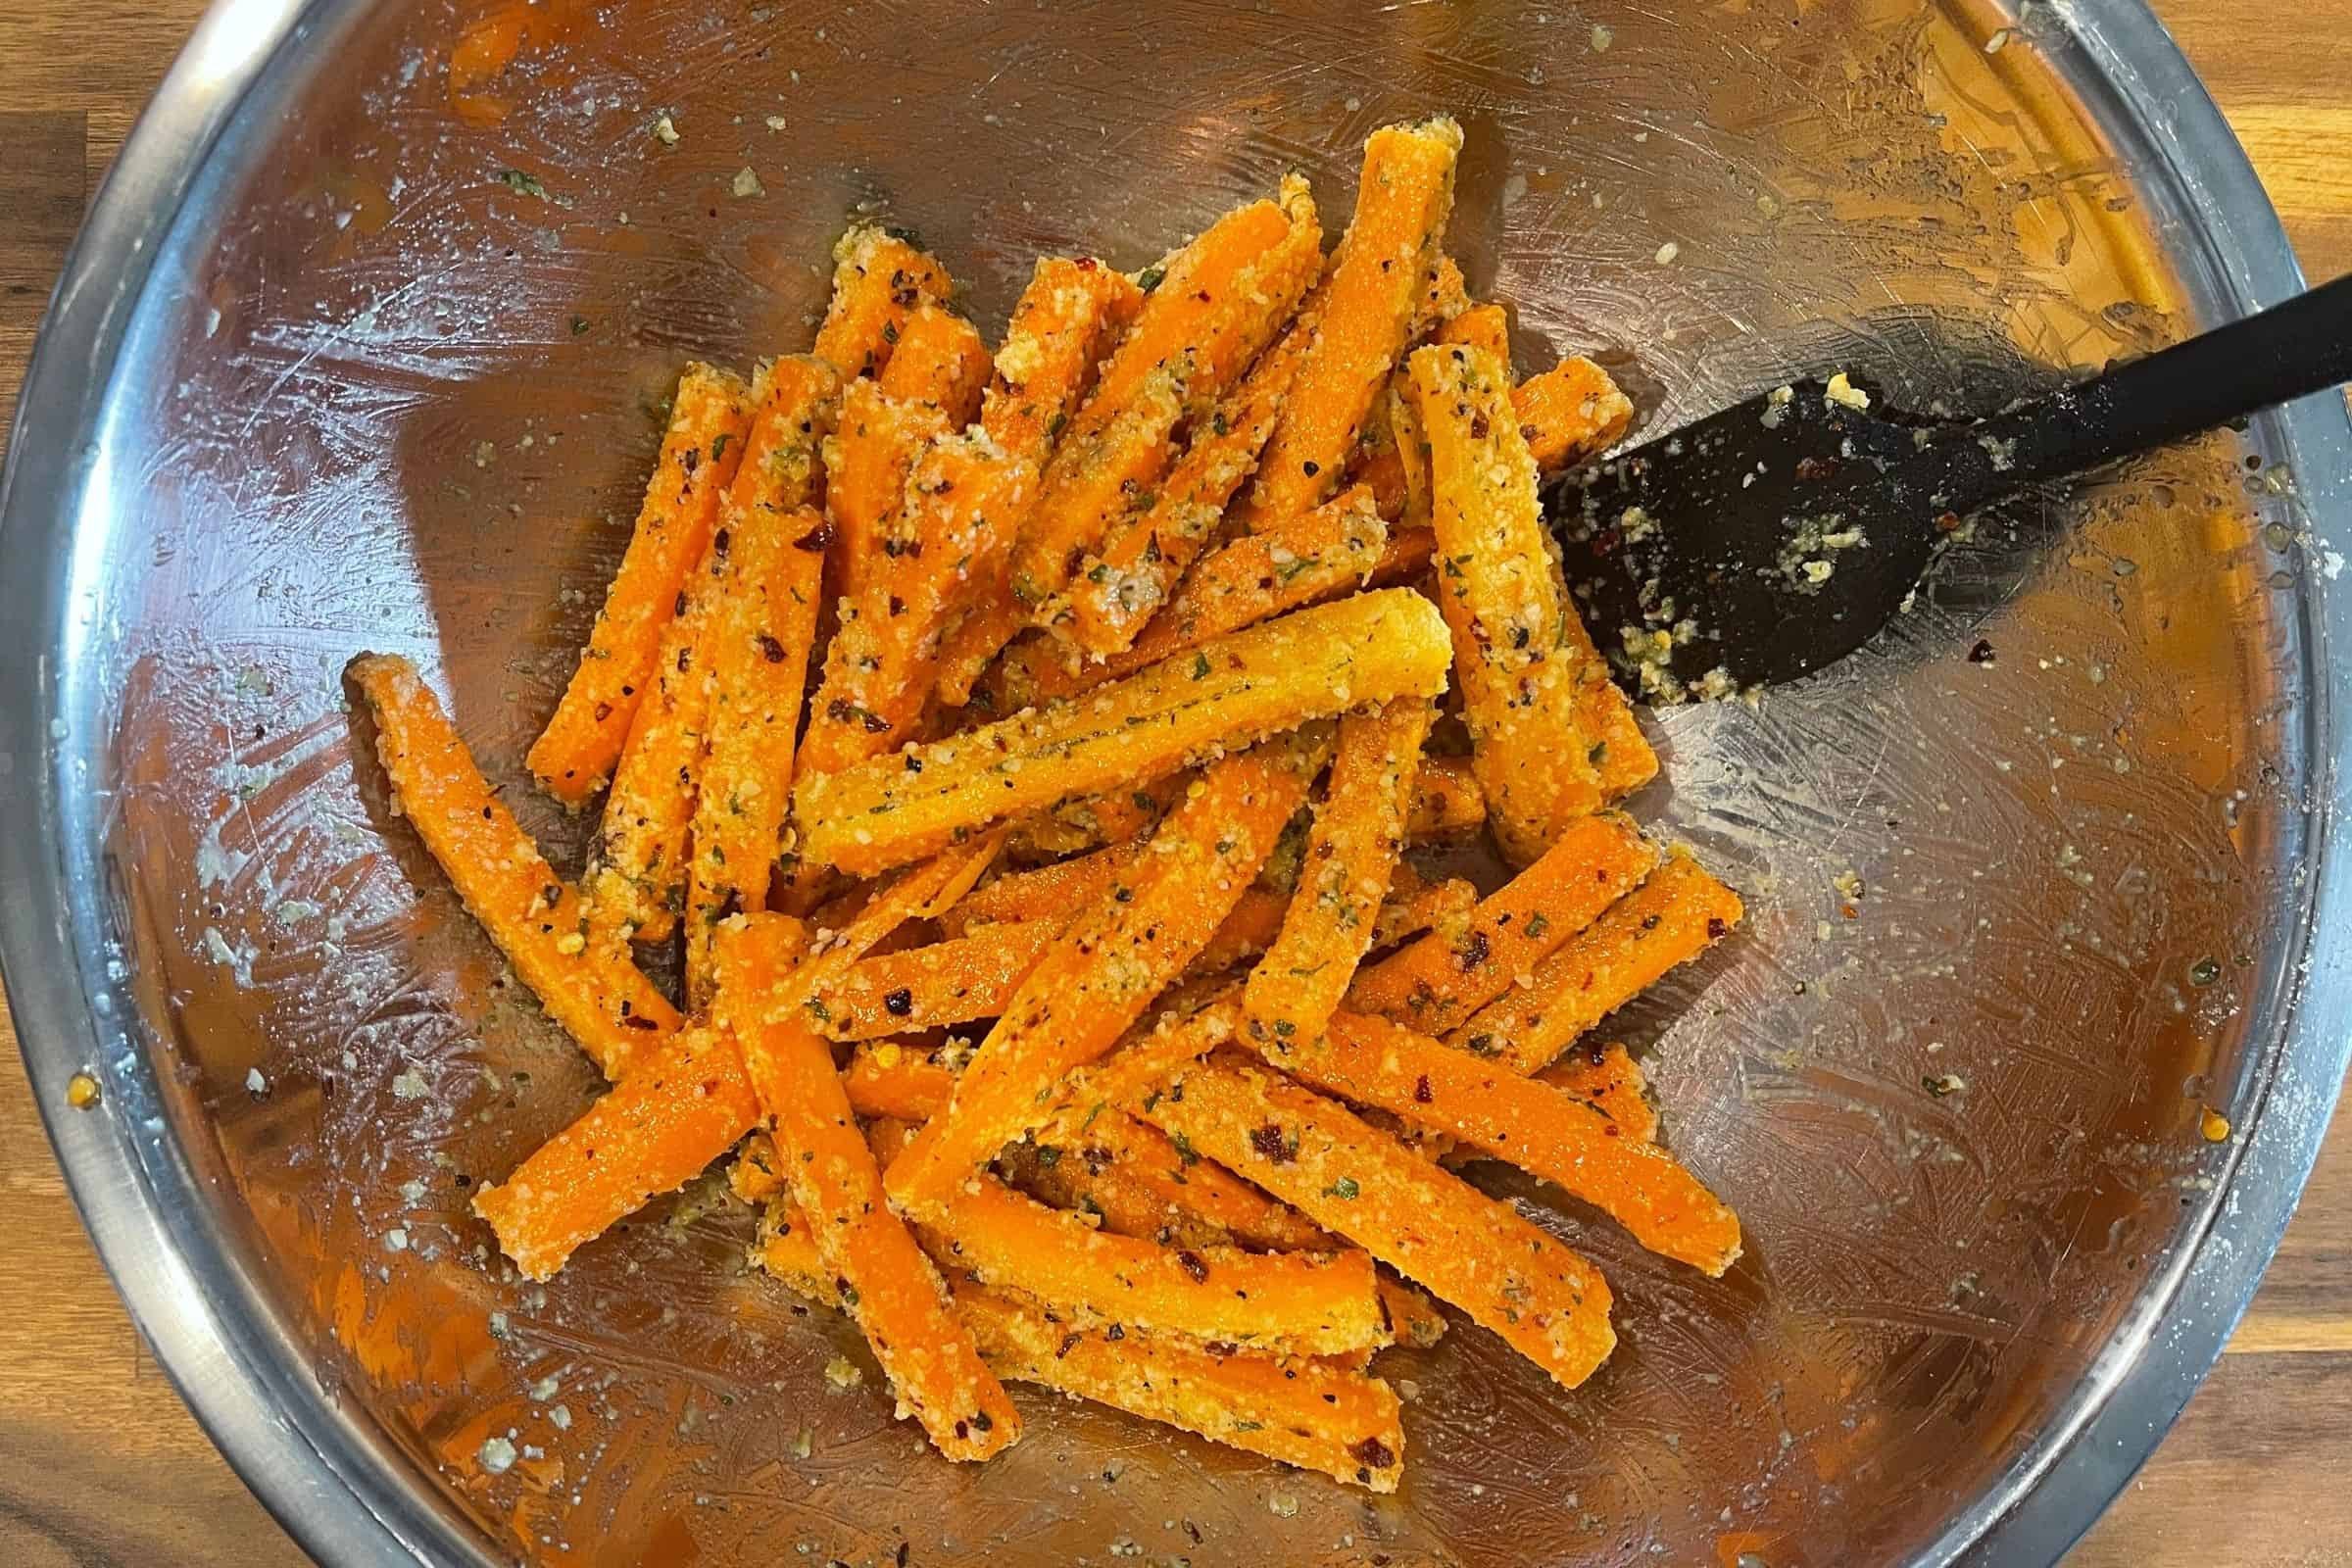 garlic parmesan carrot sticks before baking